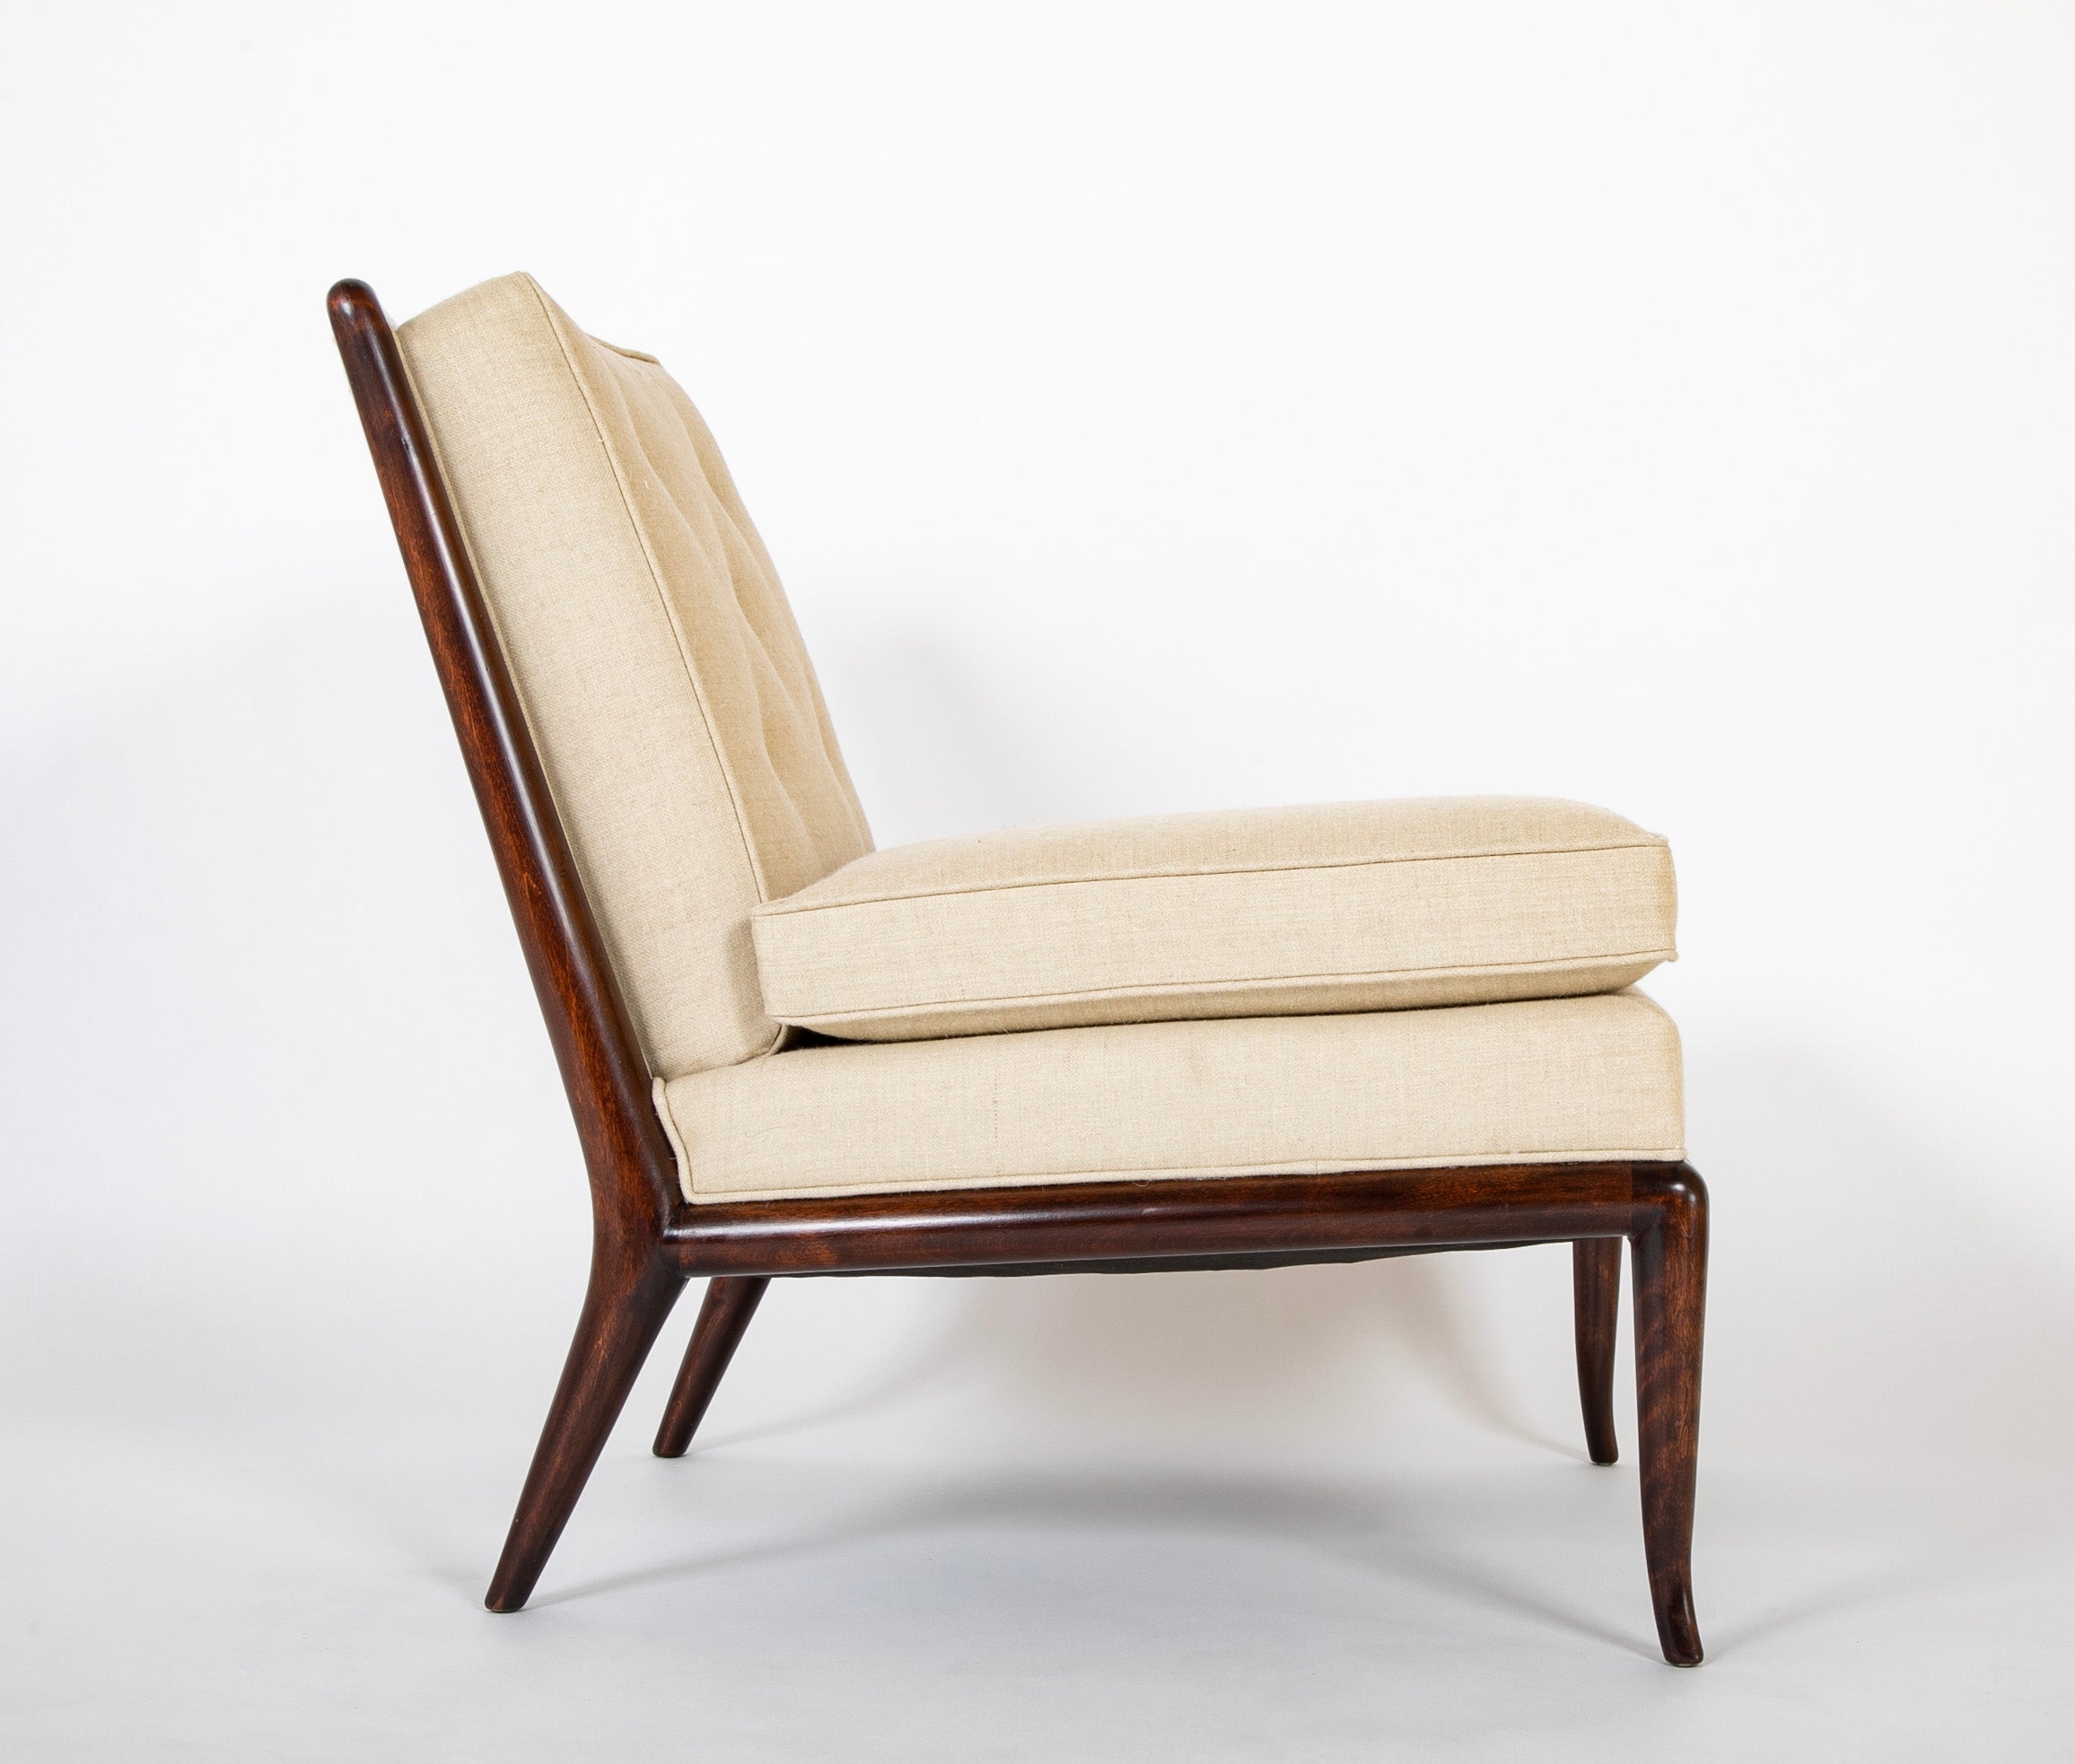 Robsjohn-Gibbings Slipper Chair